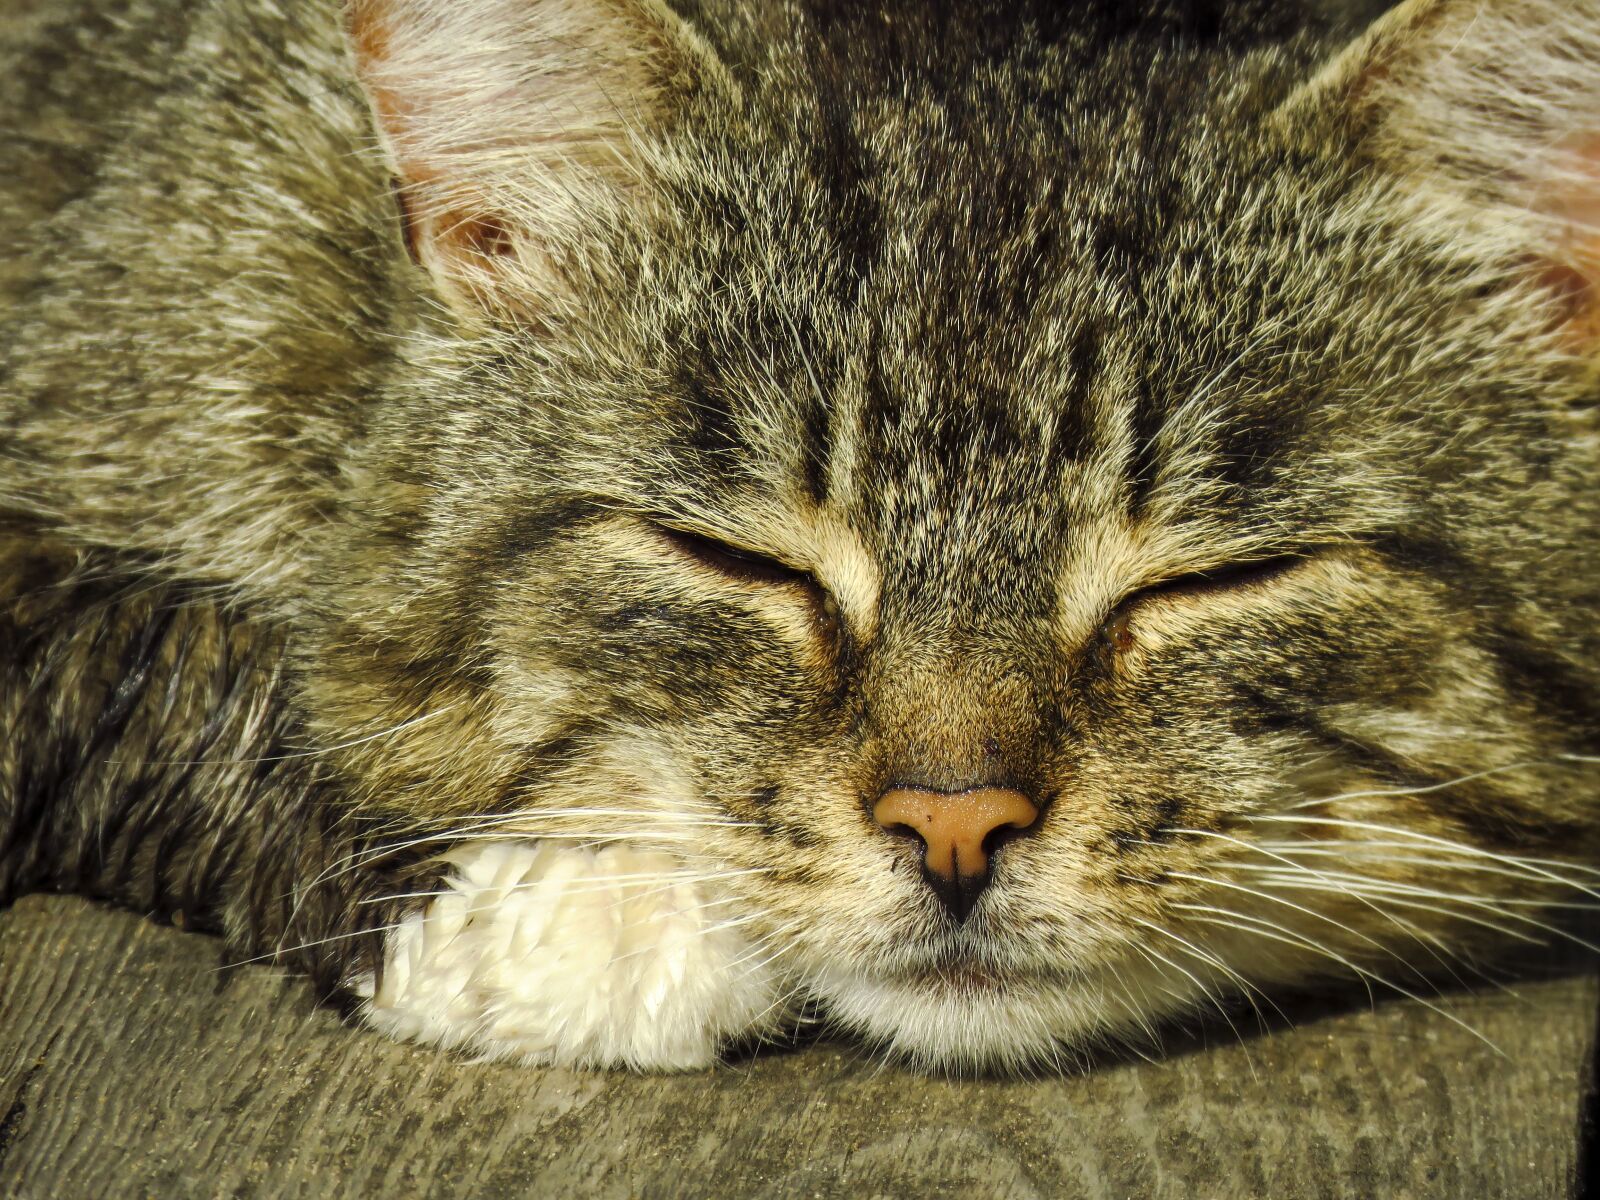 Canon PowerShot SX60 HS sample photo. Cat, snout, head photography